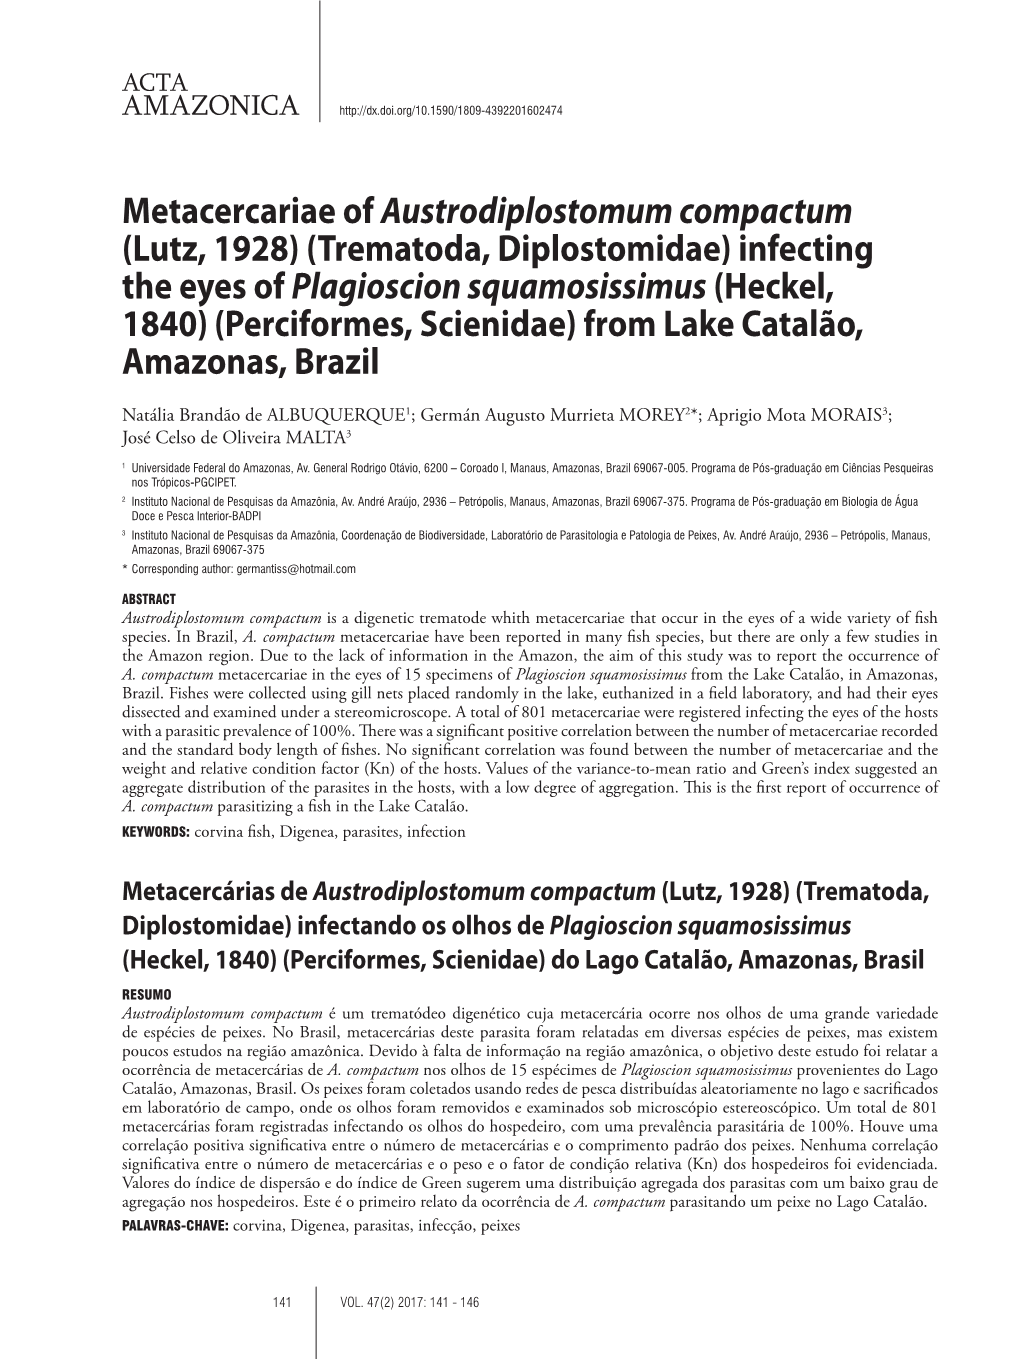 Metacercariae of Austrodiplostomum Compactum (Lutz, 1928)